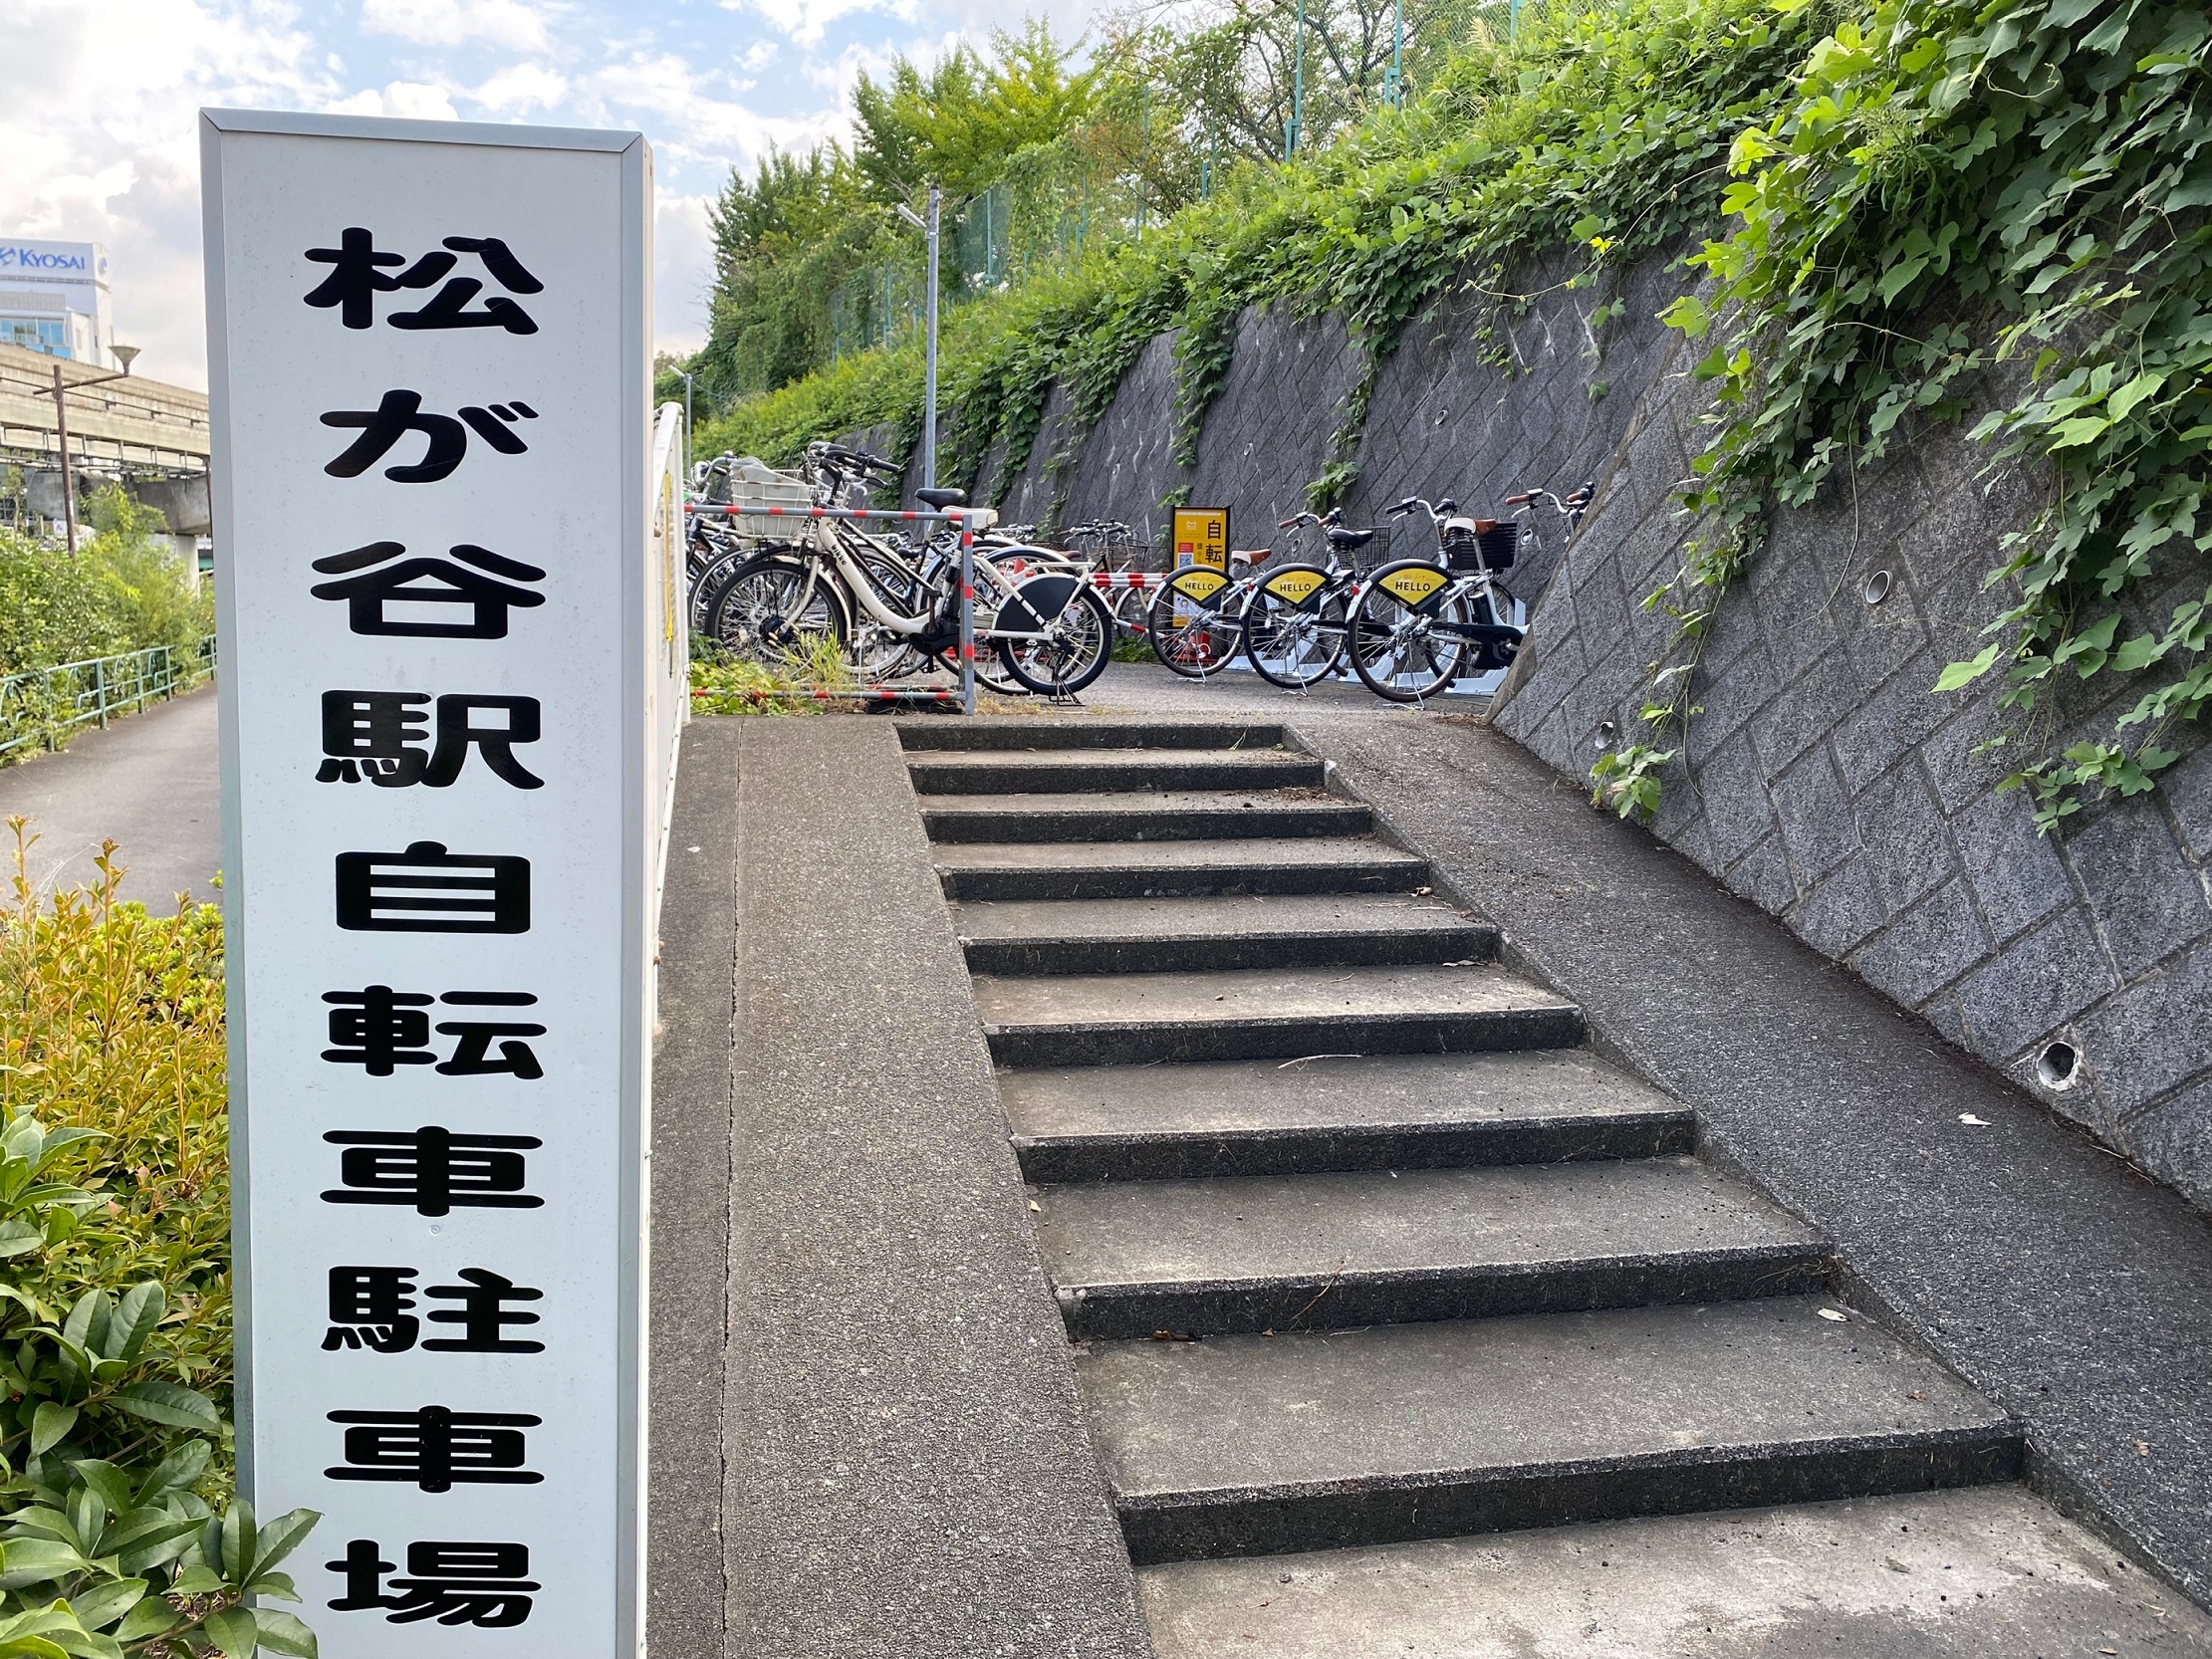 松が谷駅自転車駐車場 (HELLO CYCLING ポート)の画像1